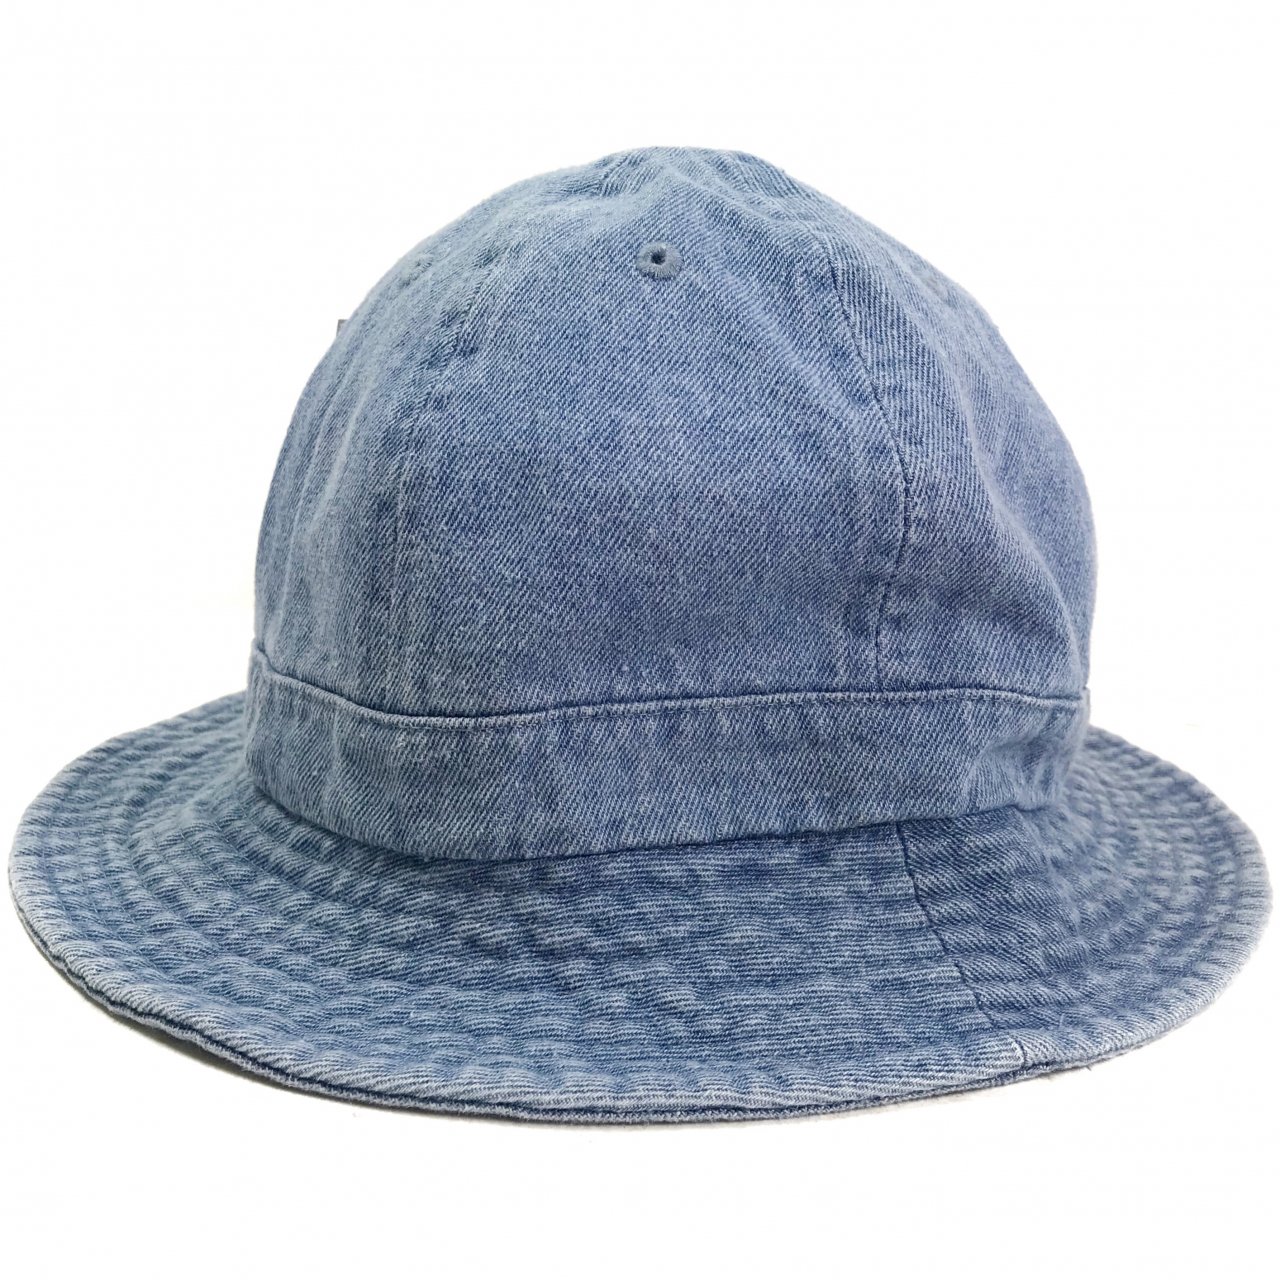 新品 NEW HATTAN Cotton Denim Metro Hat (LIGHTBLUE) ニューハッタン デニム メトロハット テニスハット  ベルハット 薄青 ライトブルー 無地 帽子 NEWJOKE ONLINE STORE